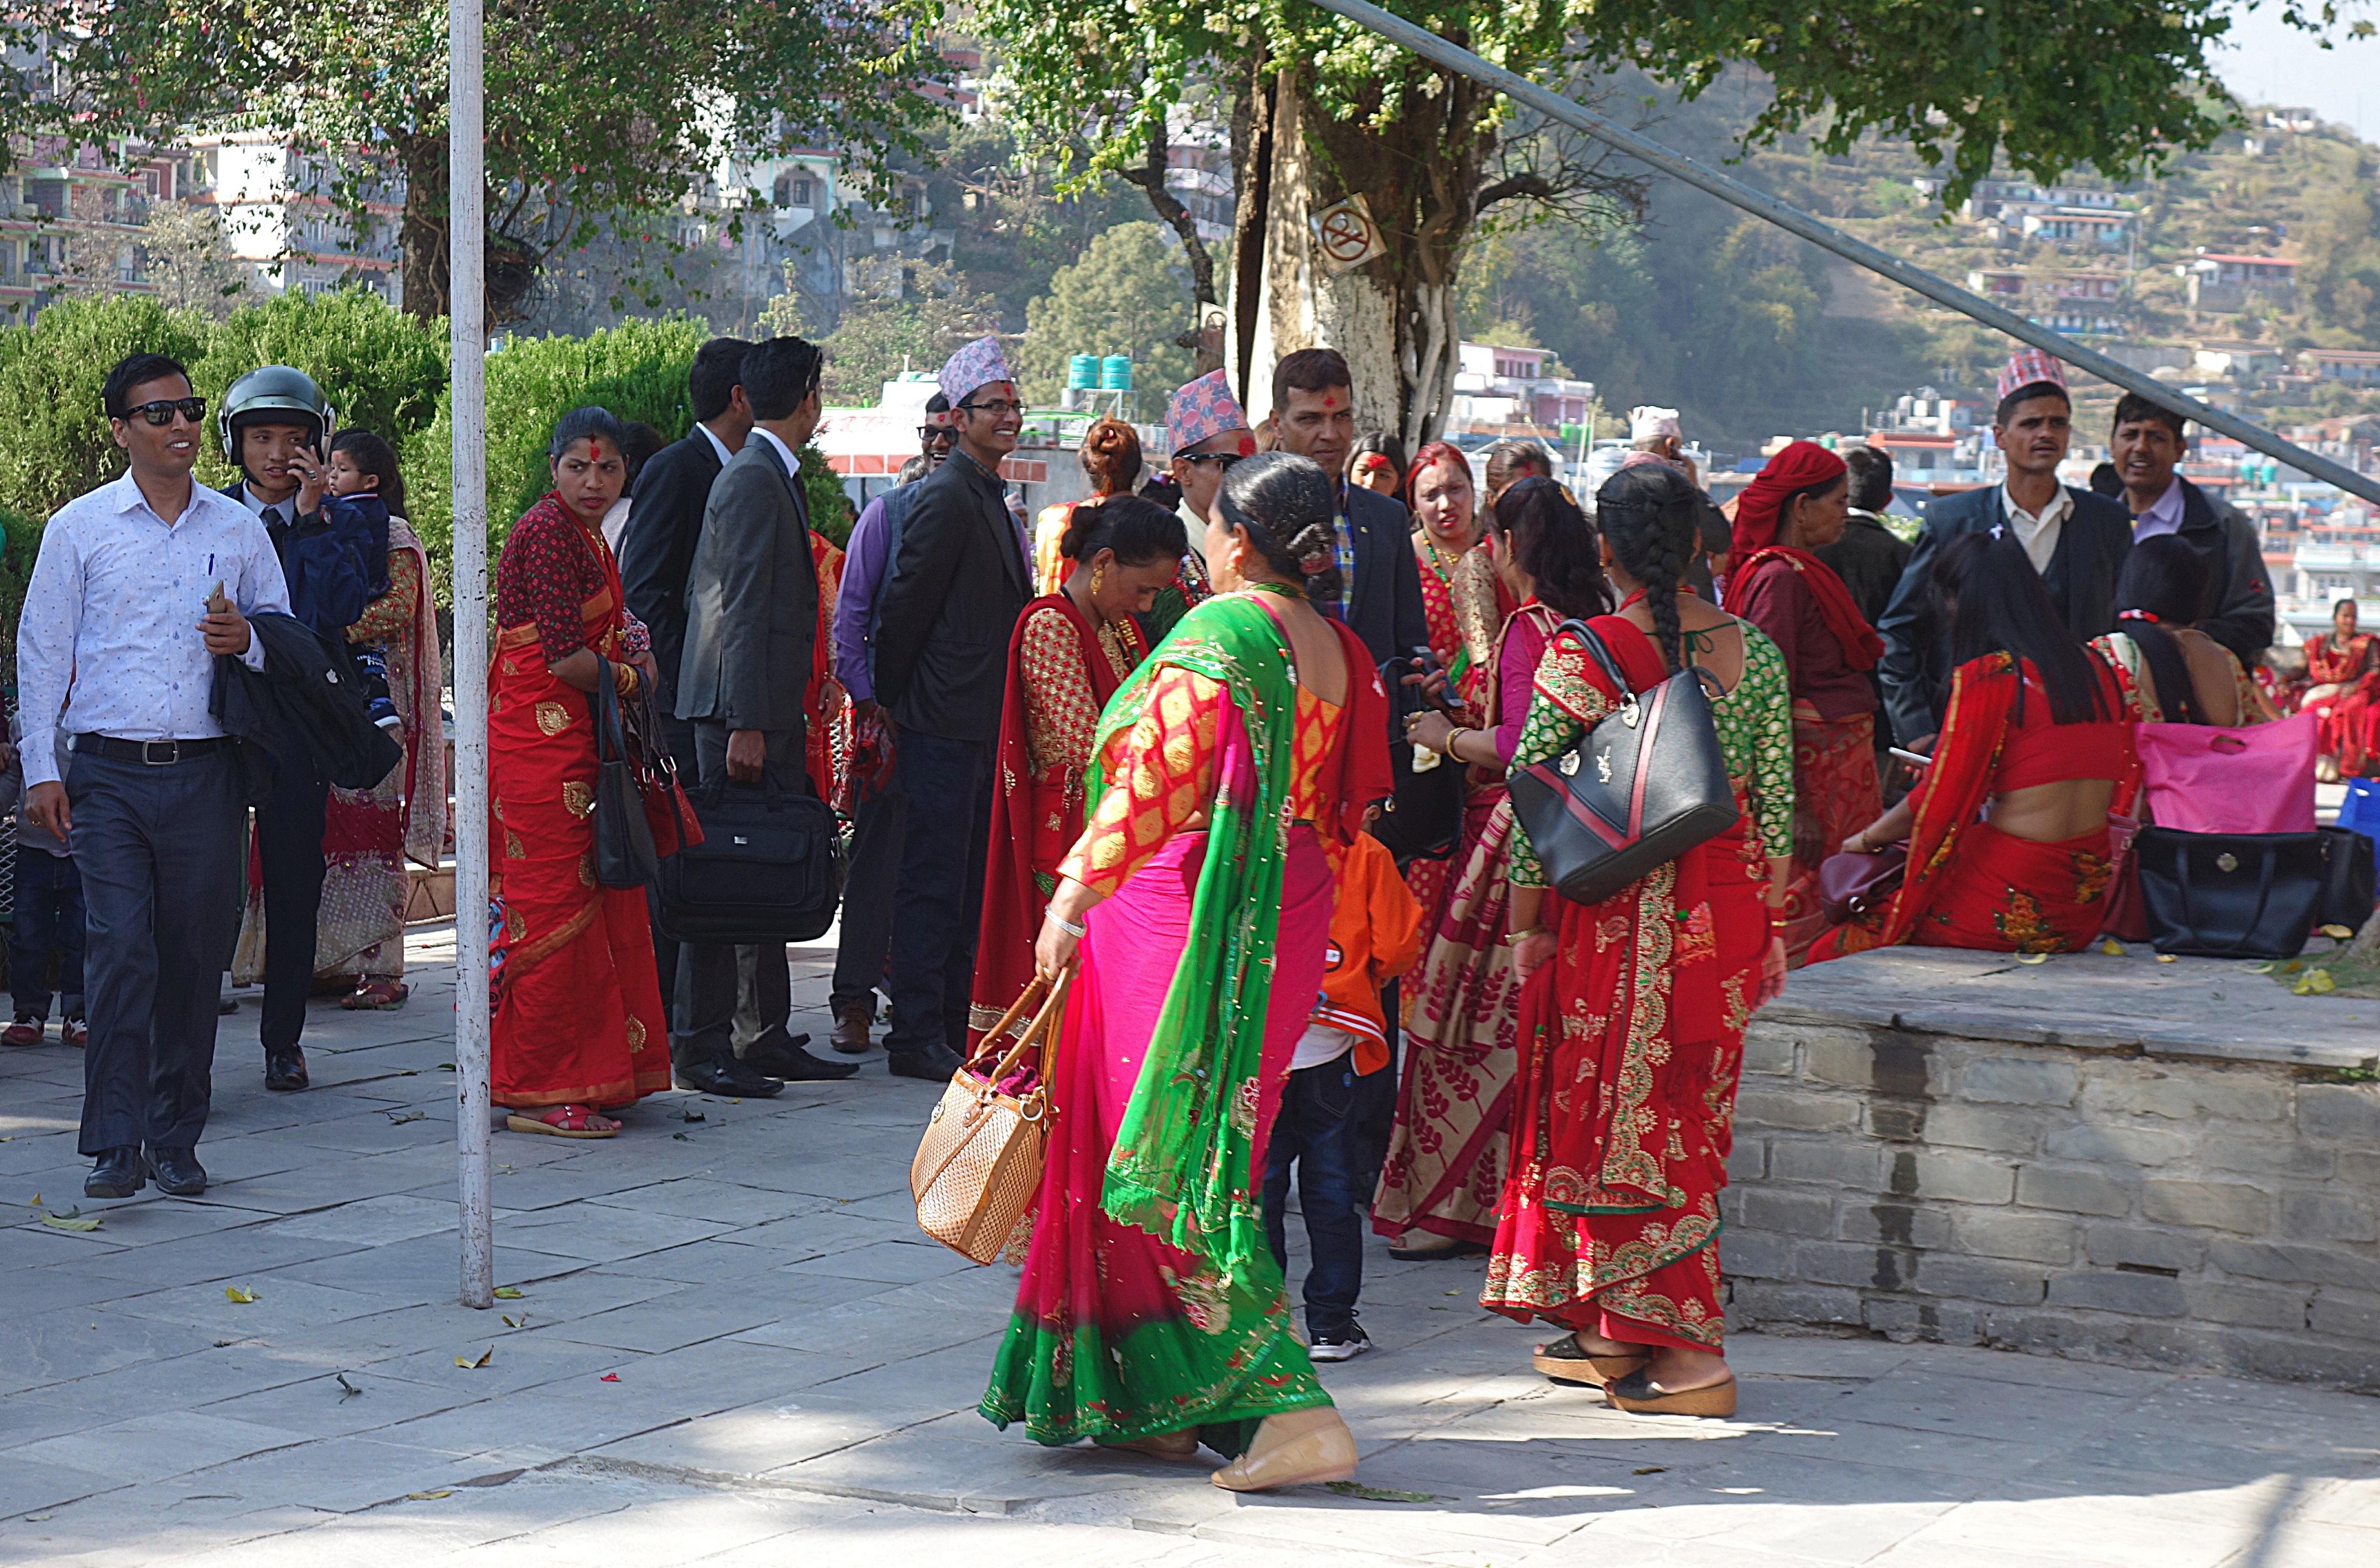 Свадьба в индуистском храме в Покхаре. Фото Морошкина В.В.